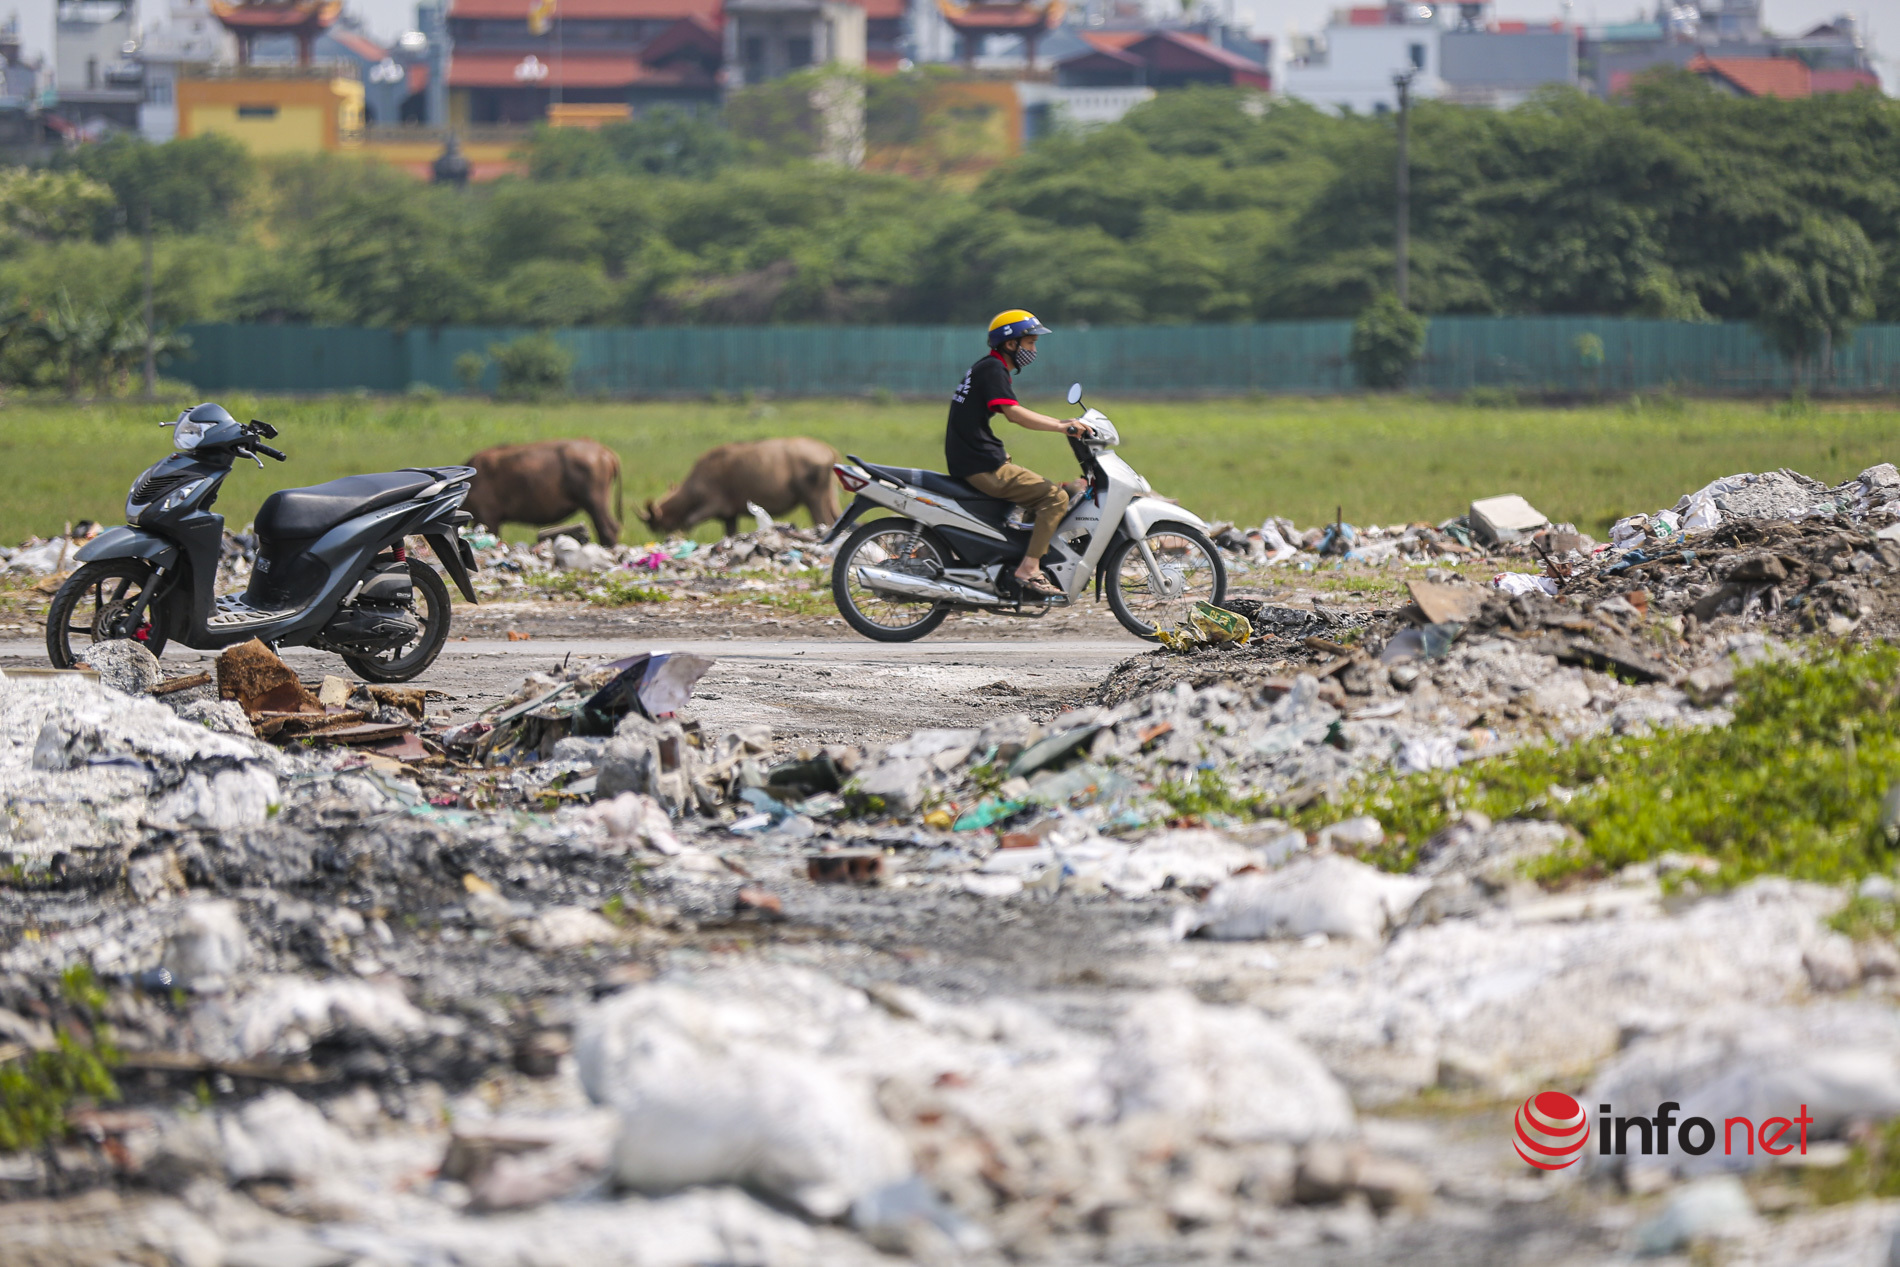 Hà Nội: Rác chất đống, tràn lấn đường đi dự án tái định cư